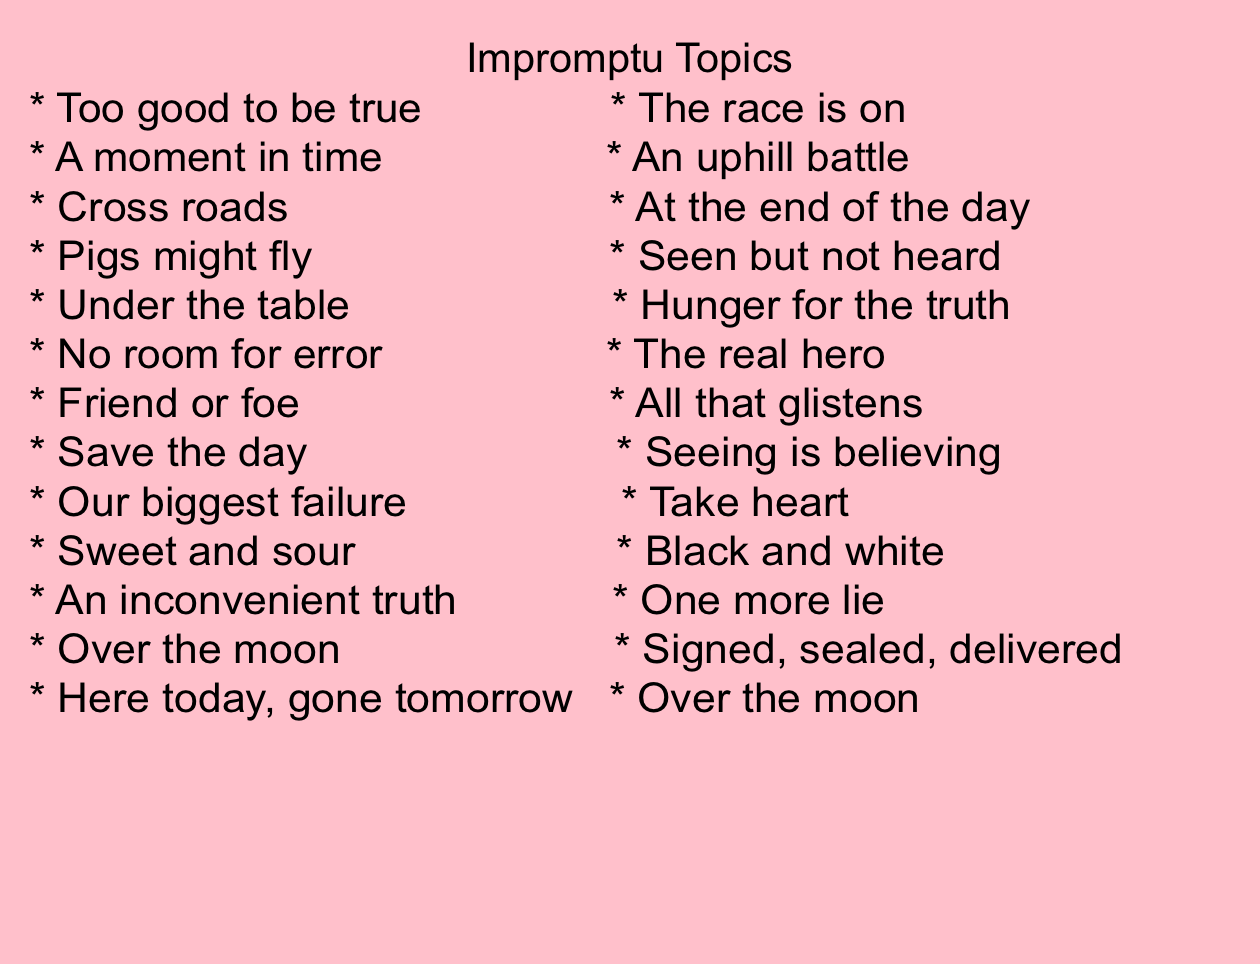 ð± Esl impromptu speech topics. 110 Amazing Impromptu Speech Topics and